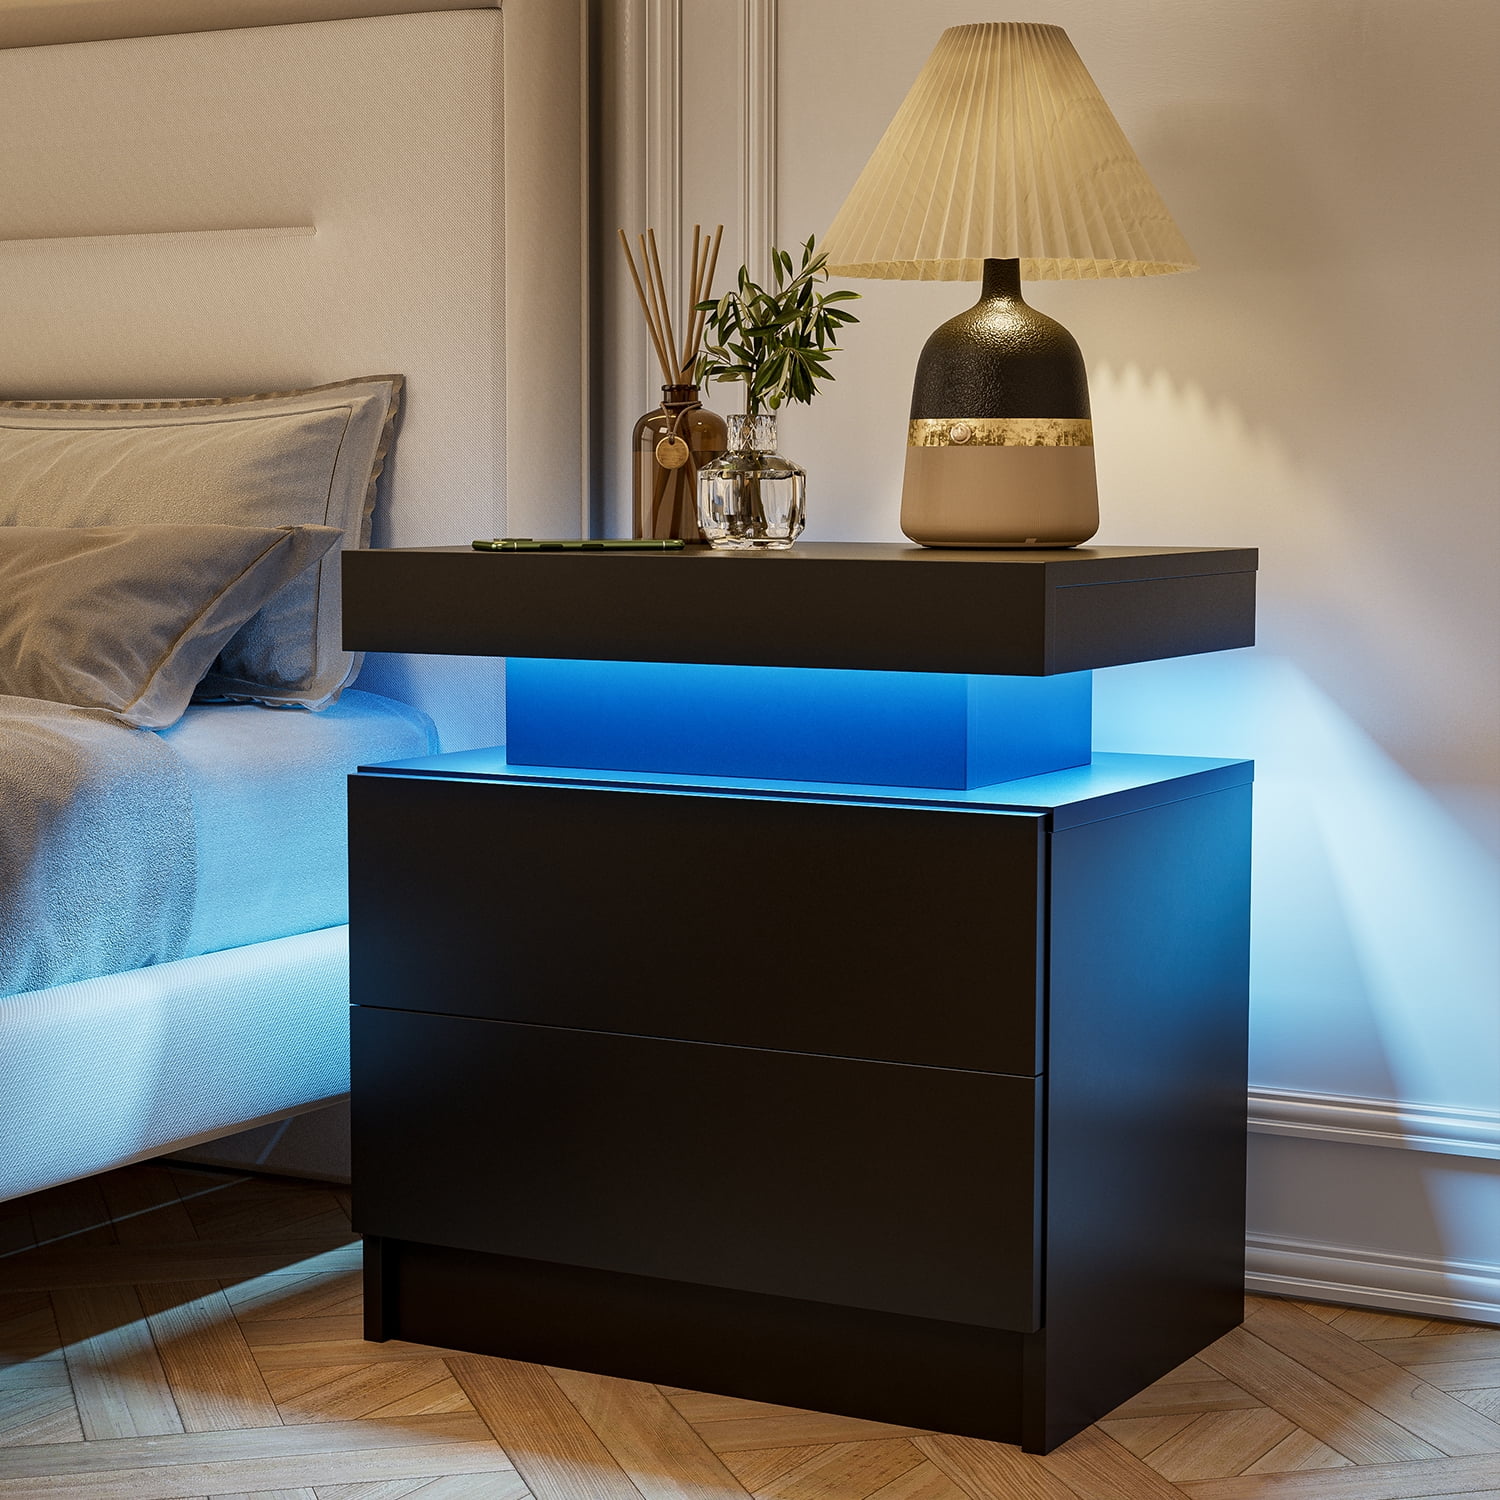  Modern Bedside Table For Bedroom